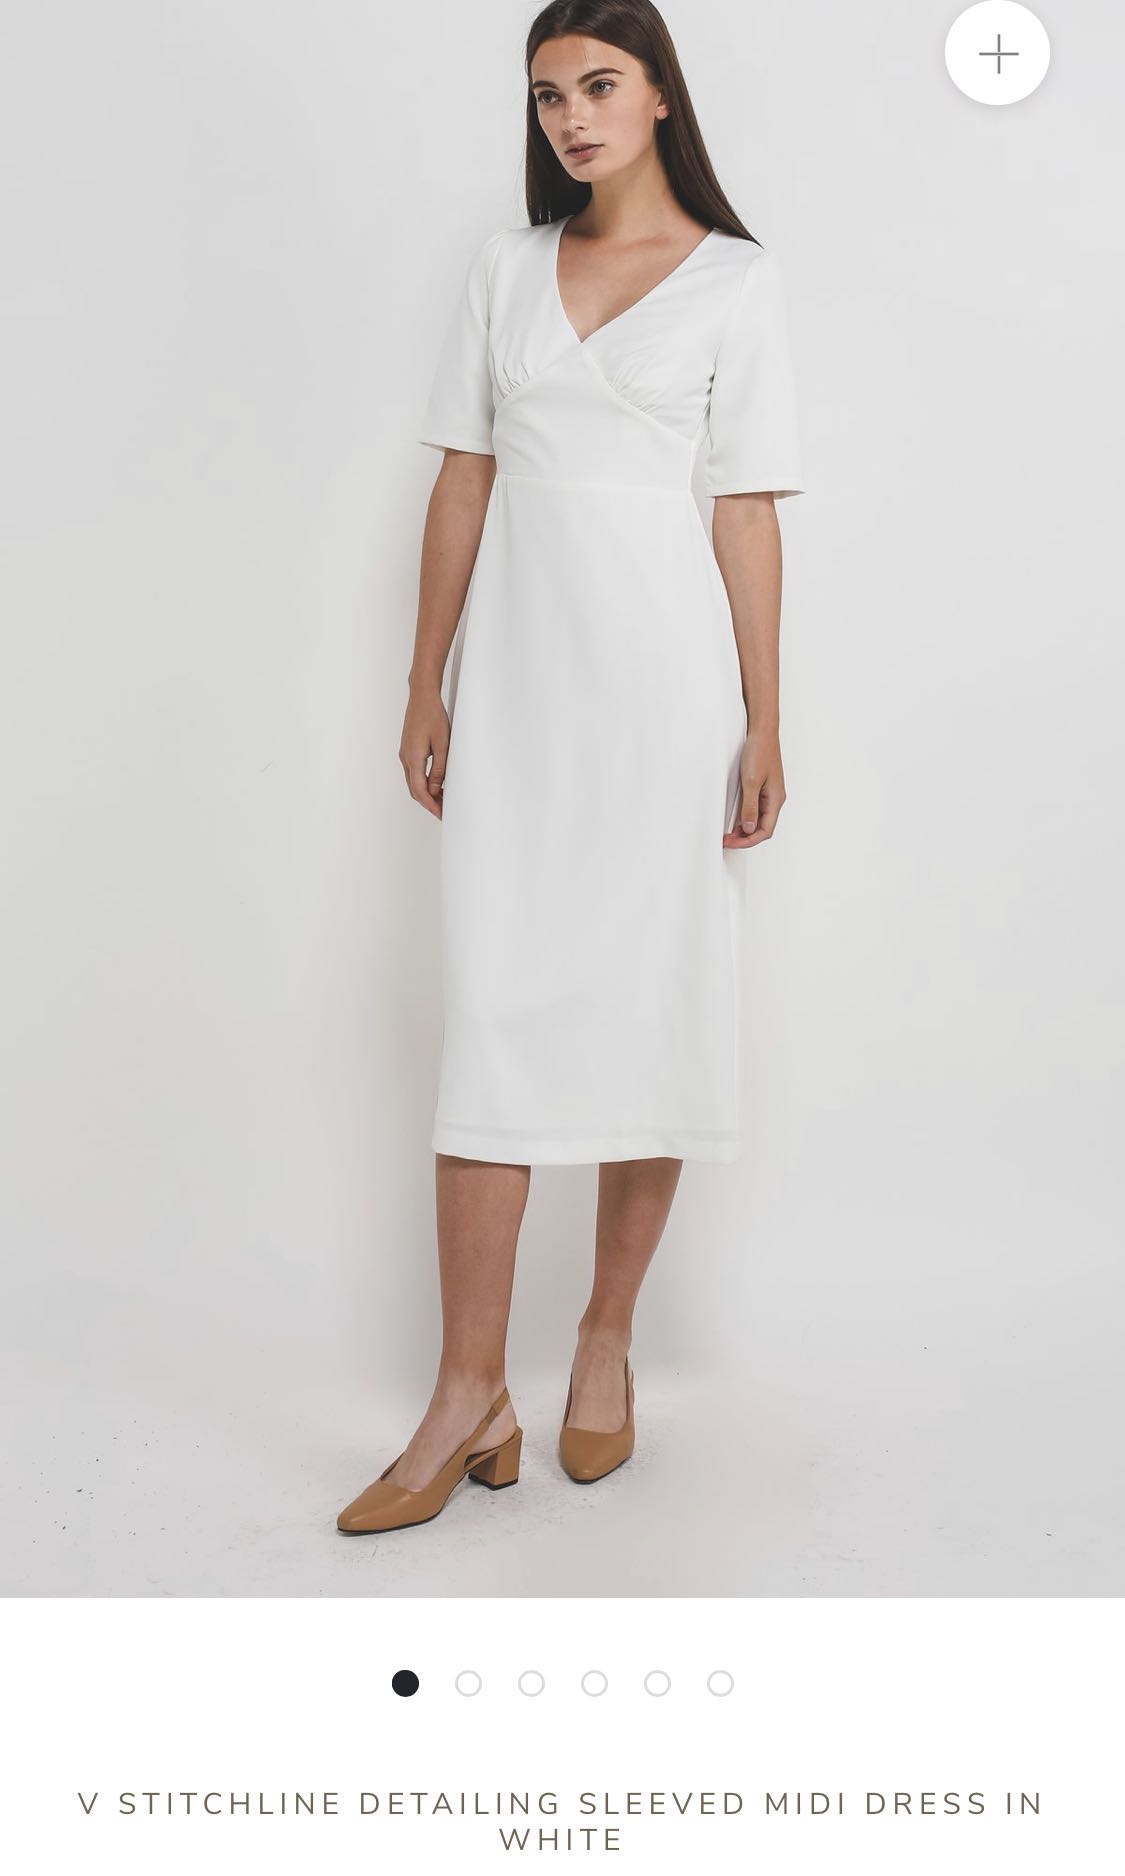 Klarra V Stitchline Detailing Sleeved Midi Dress (White), Women's ...